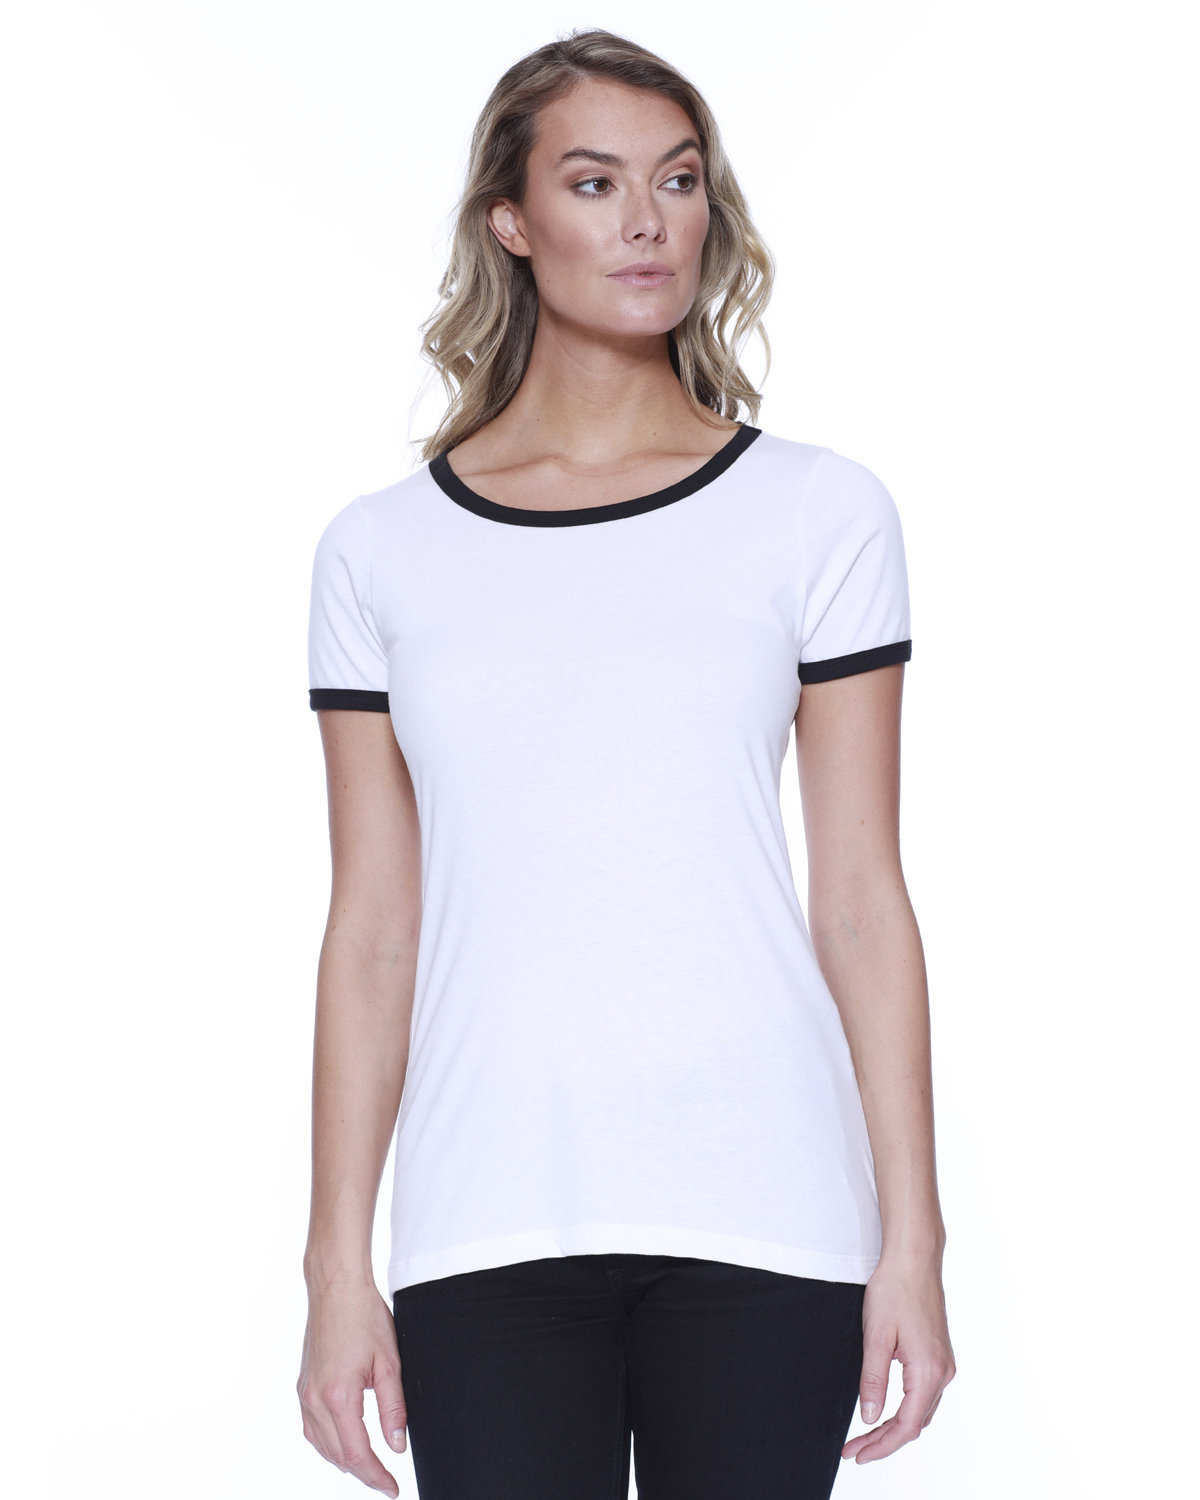 StarTee Ladies' CVC Ringer T-Shirt WHITE/ BLACK 